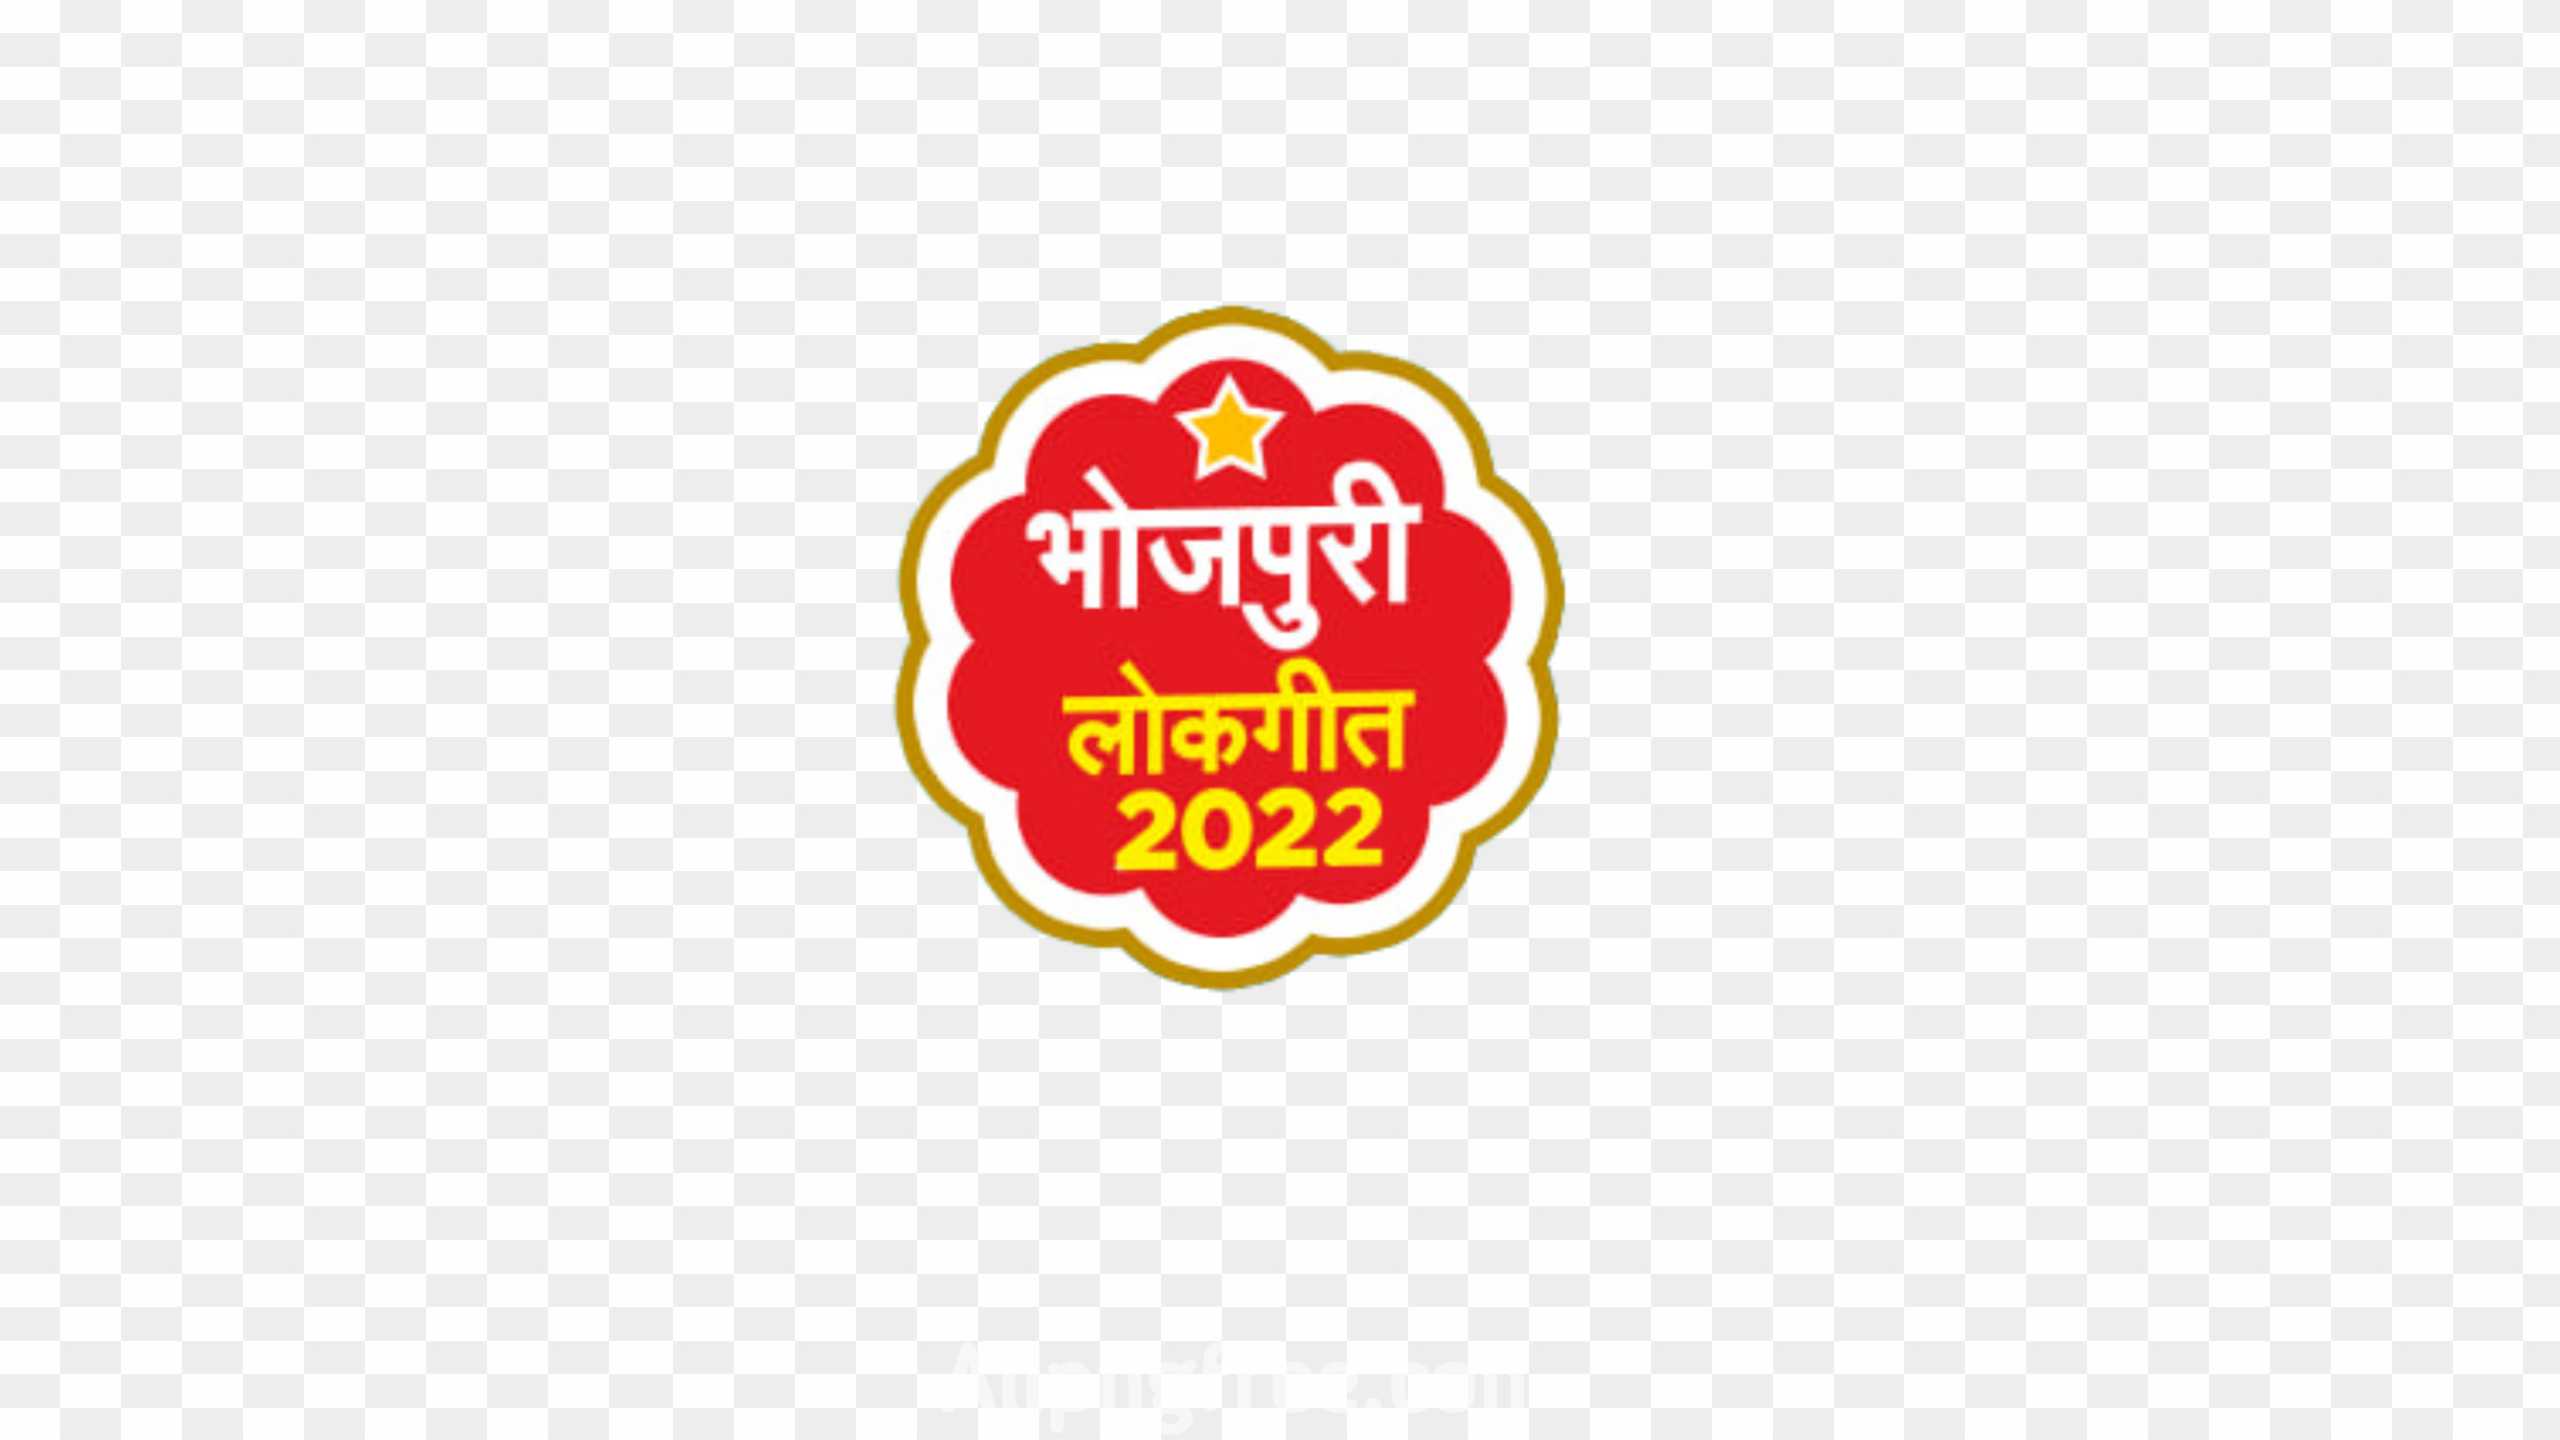 Bhojpuri lokgeet 2022 png download